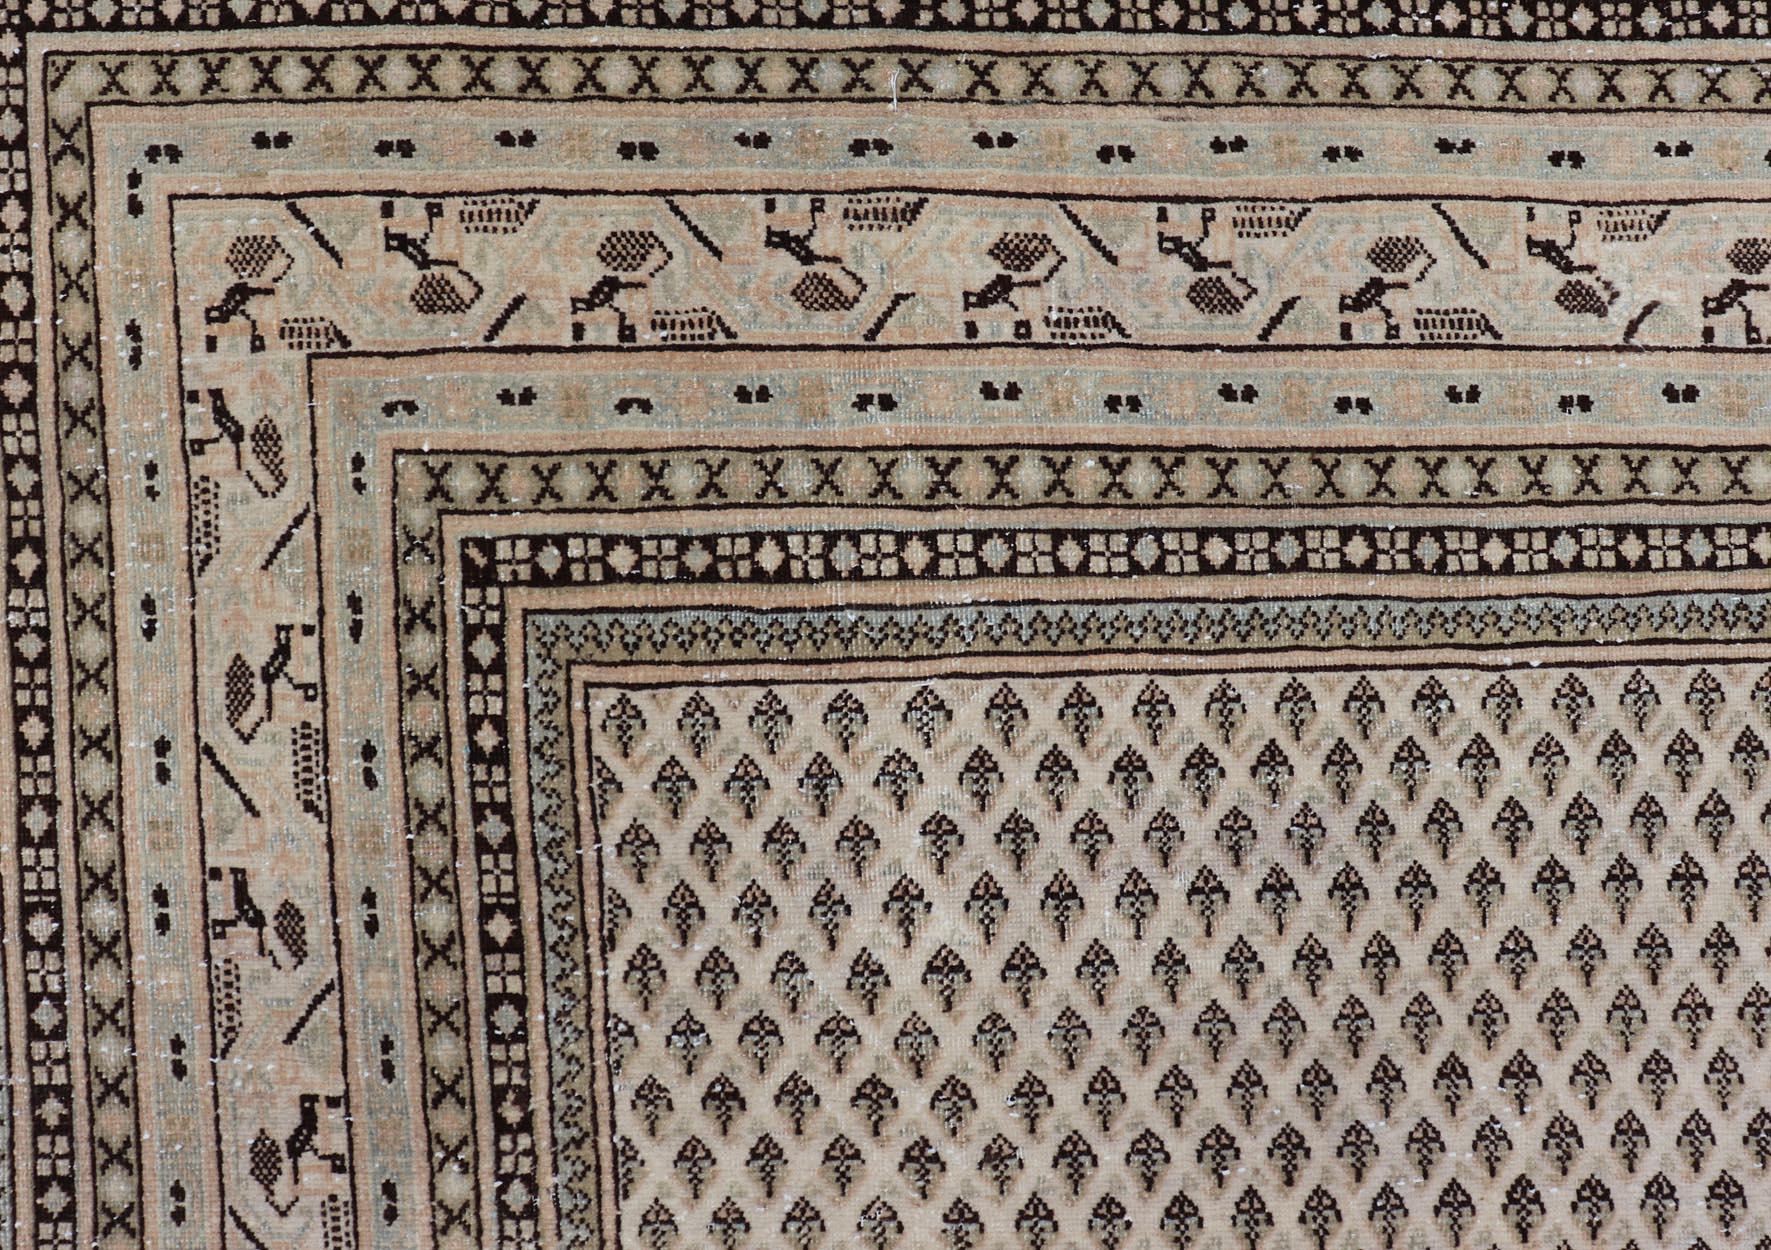 Tapis Persan Tabriz au design minimaliste dans les tons marron et crème. Tapis persan avec petit motif répétitif Mir. Keivan Woven Arts / tapis W22-0104, pays d'origine / type : Iran/ Tabriz, vers 1940.

Mesures : 7'9 x 10'7

Ce tapis Tabriz